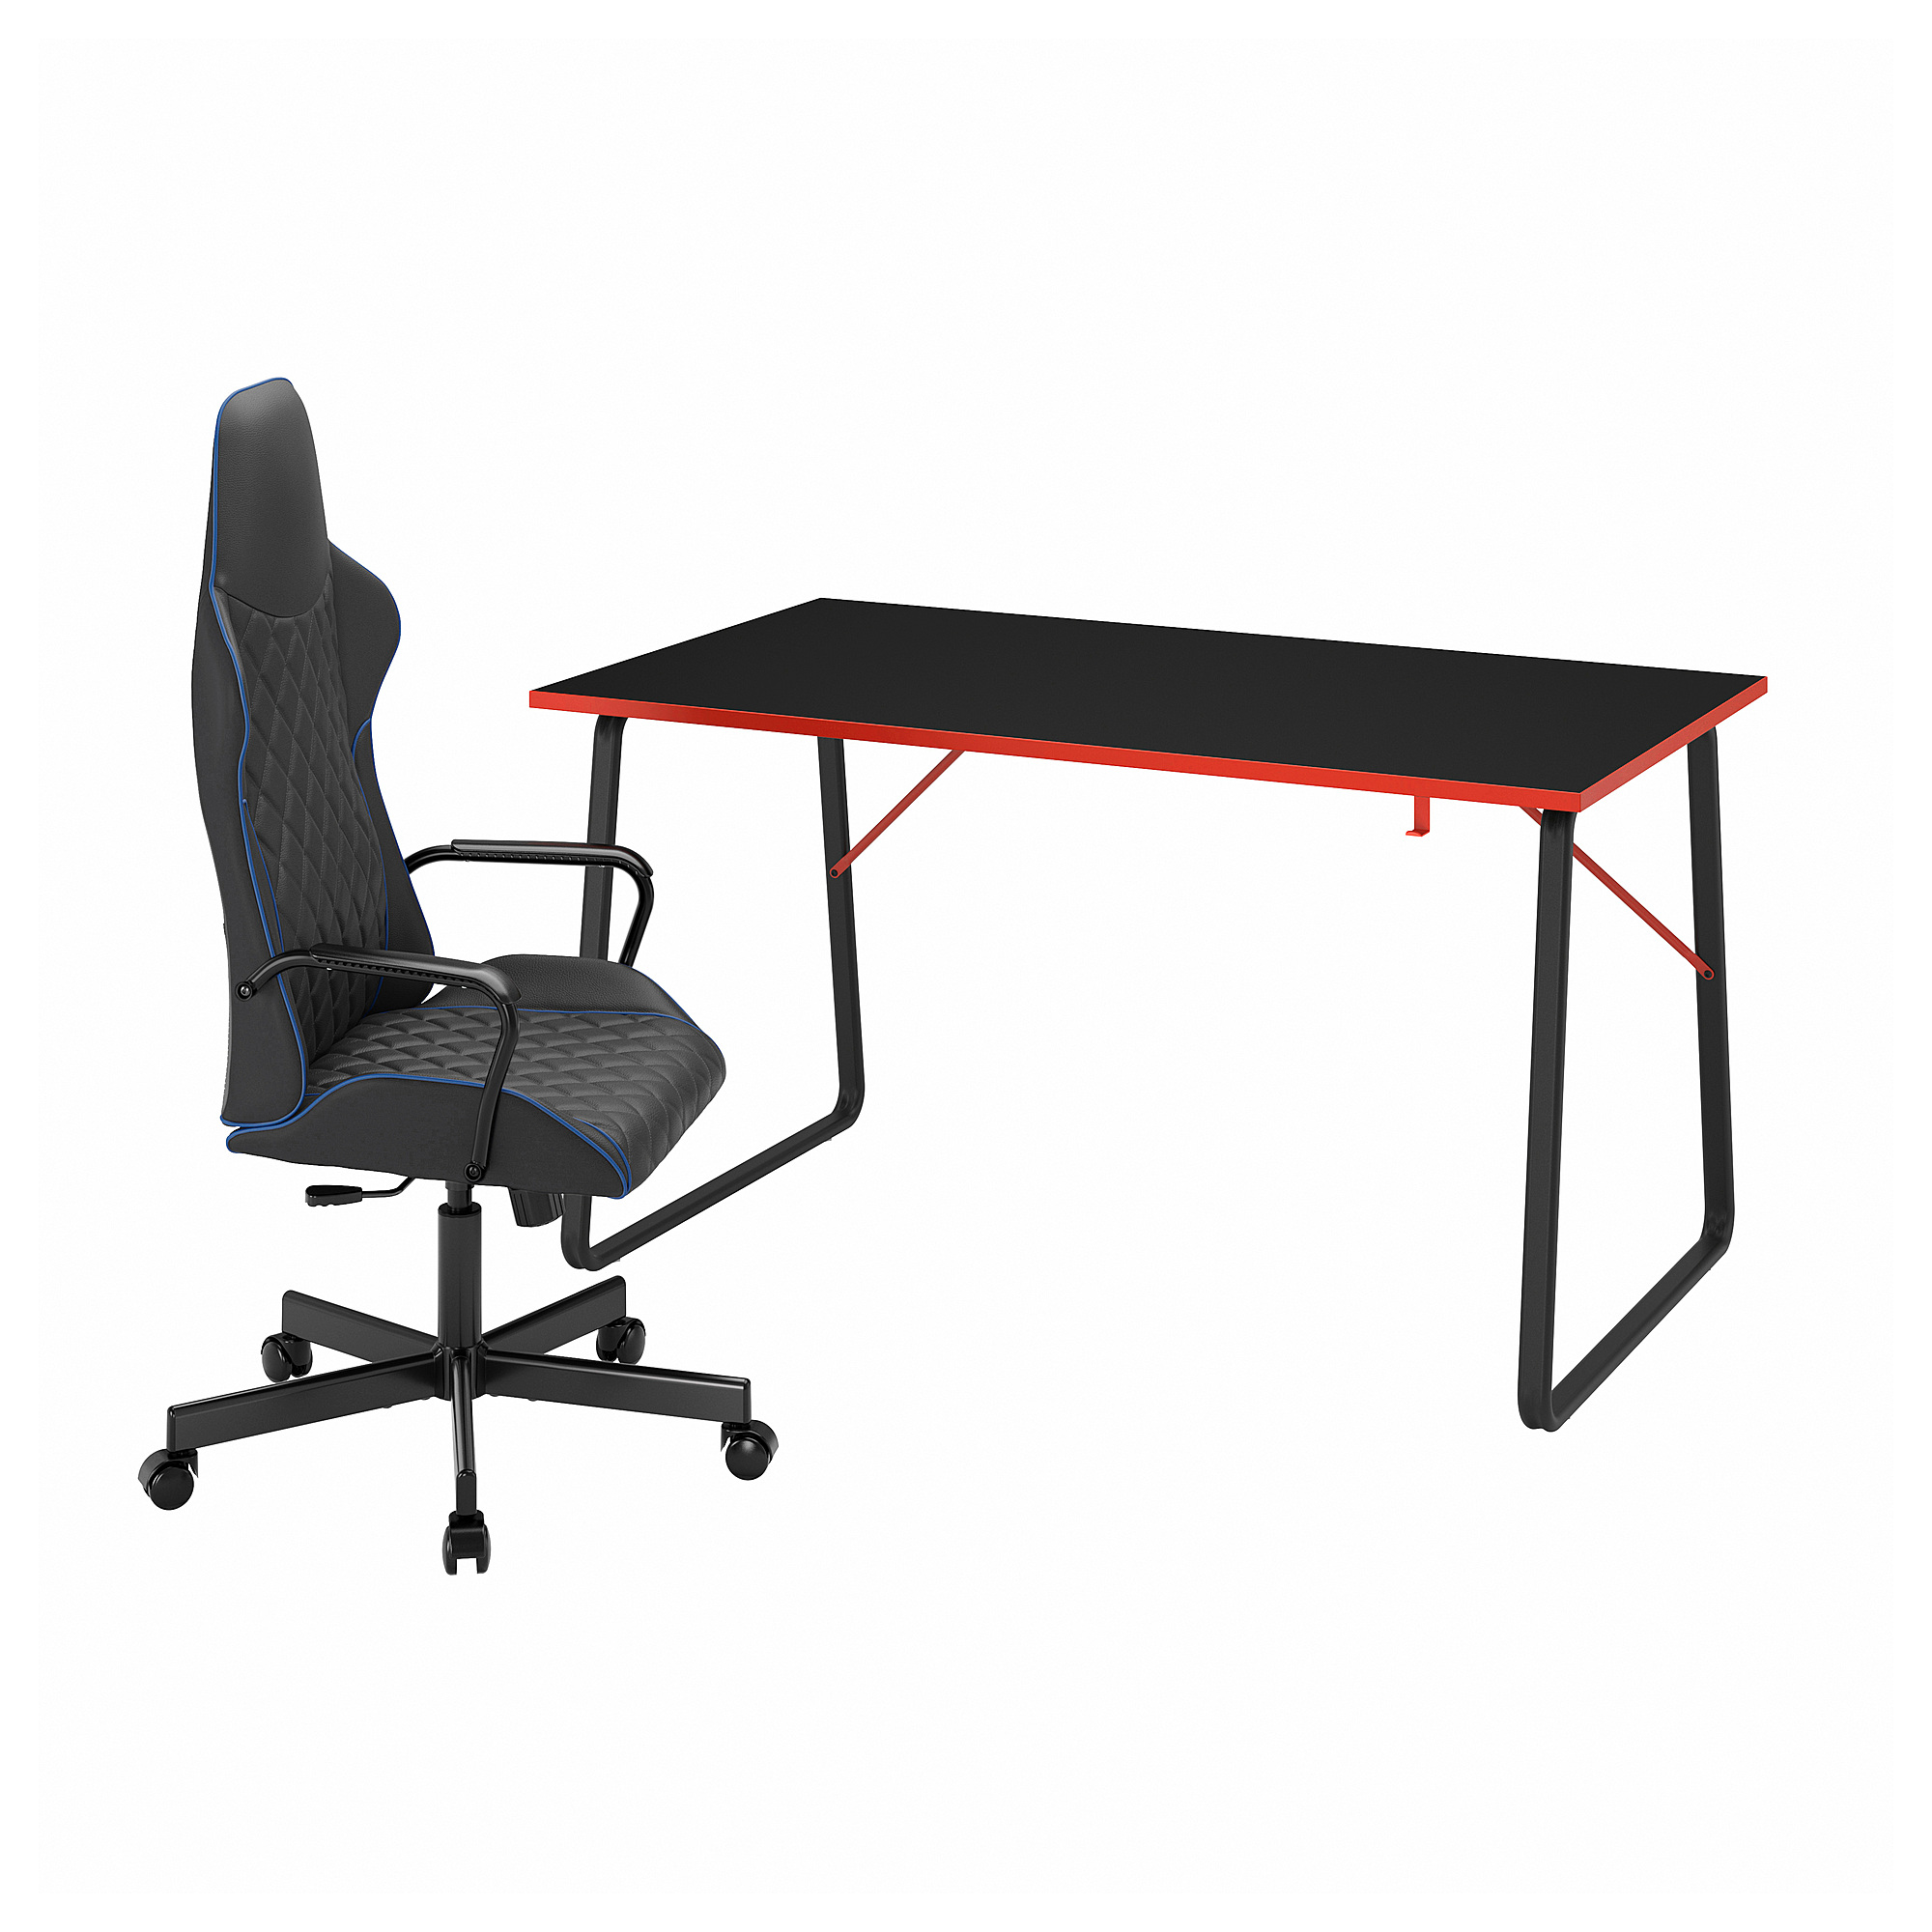 HUVUDSPELARE/UTESPELARE 電競桌/椅